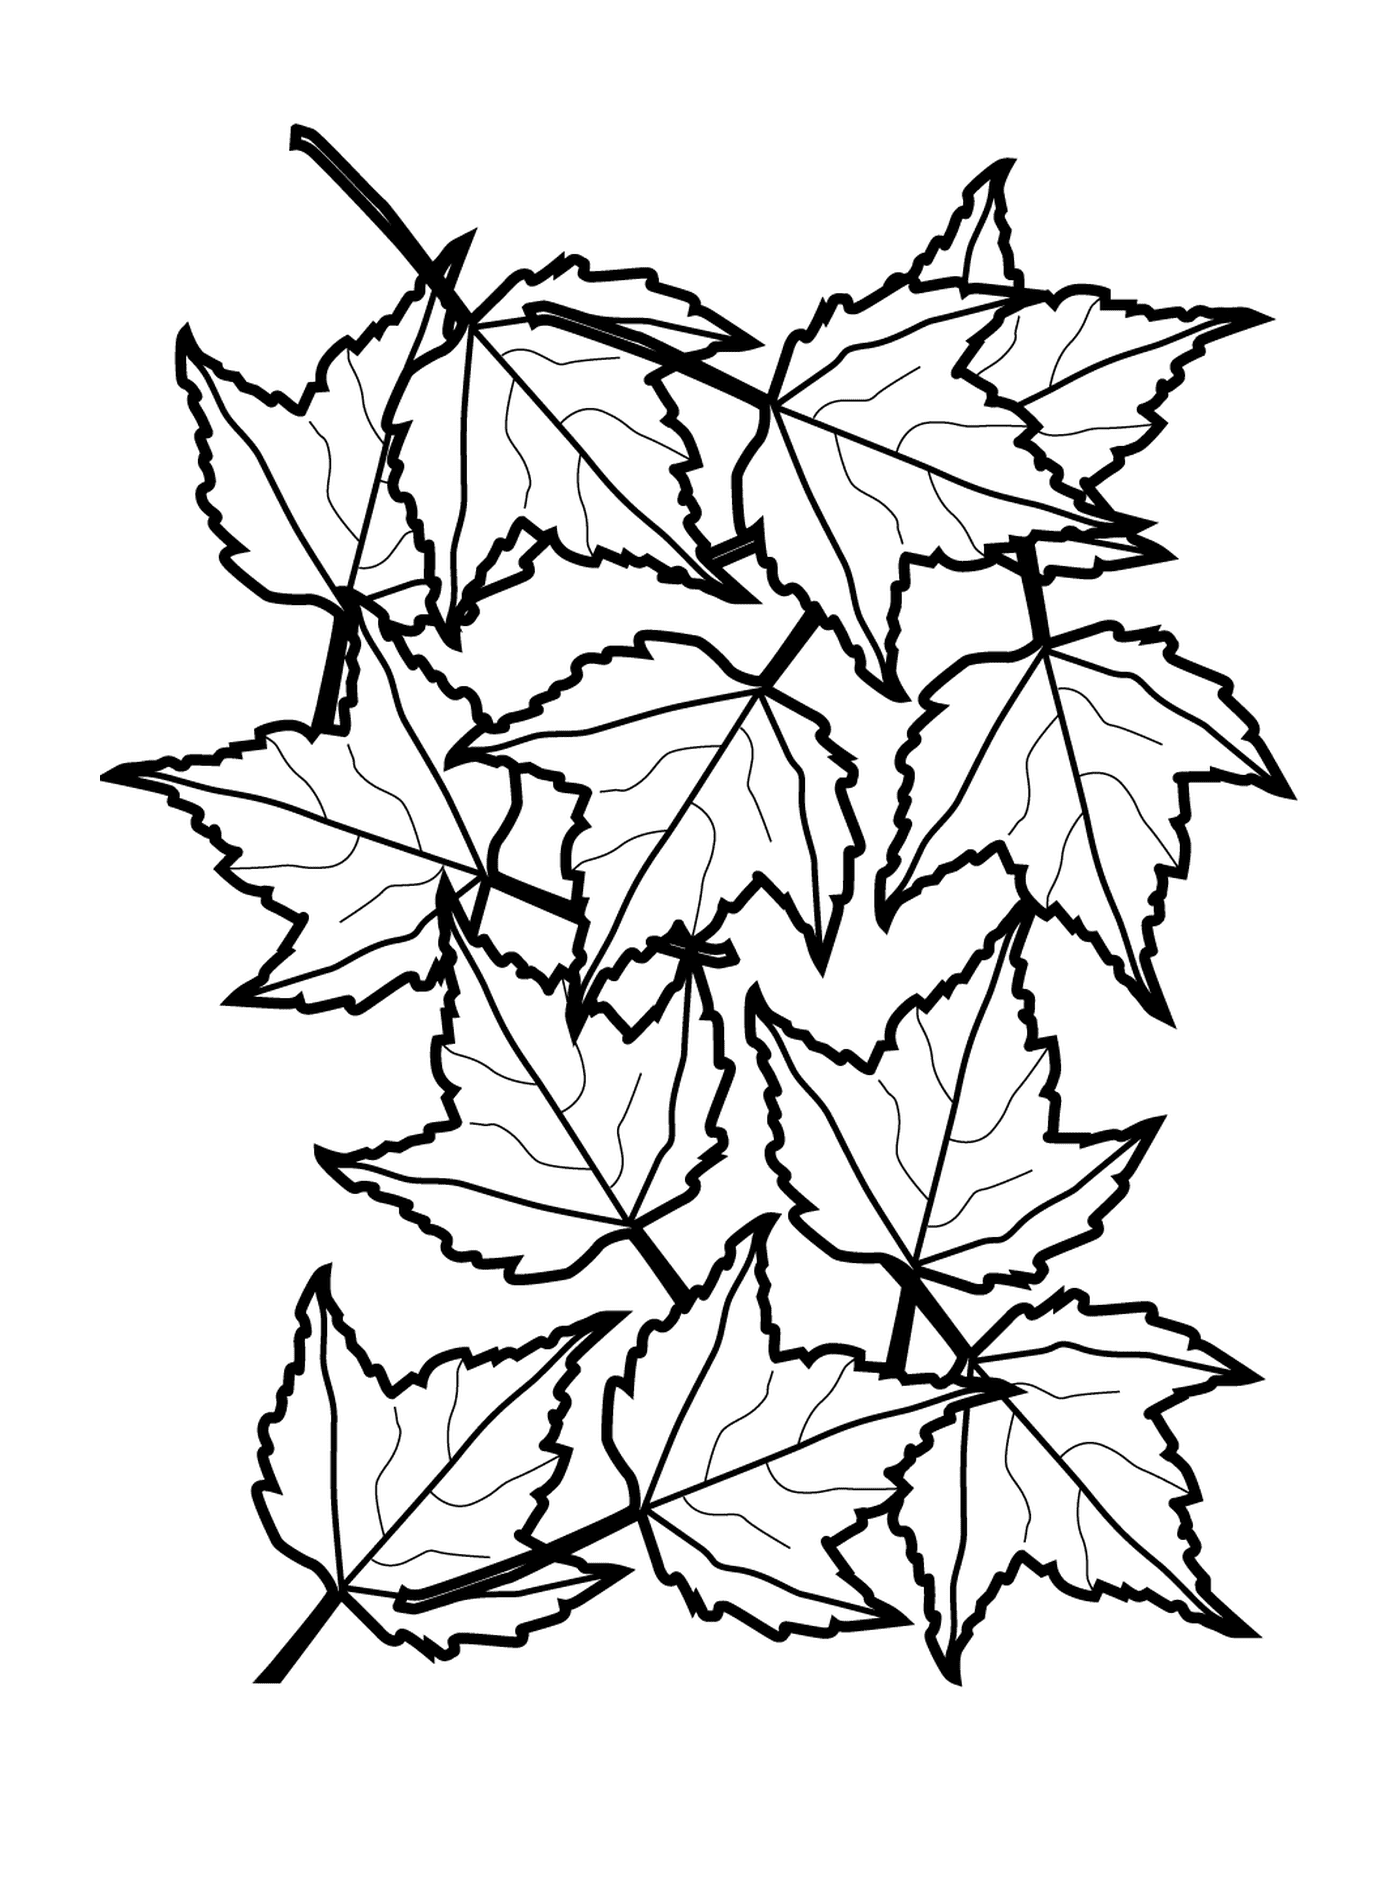   Ligne d'une multitude de feuilles d'automne 